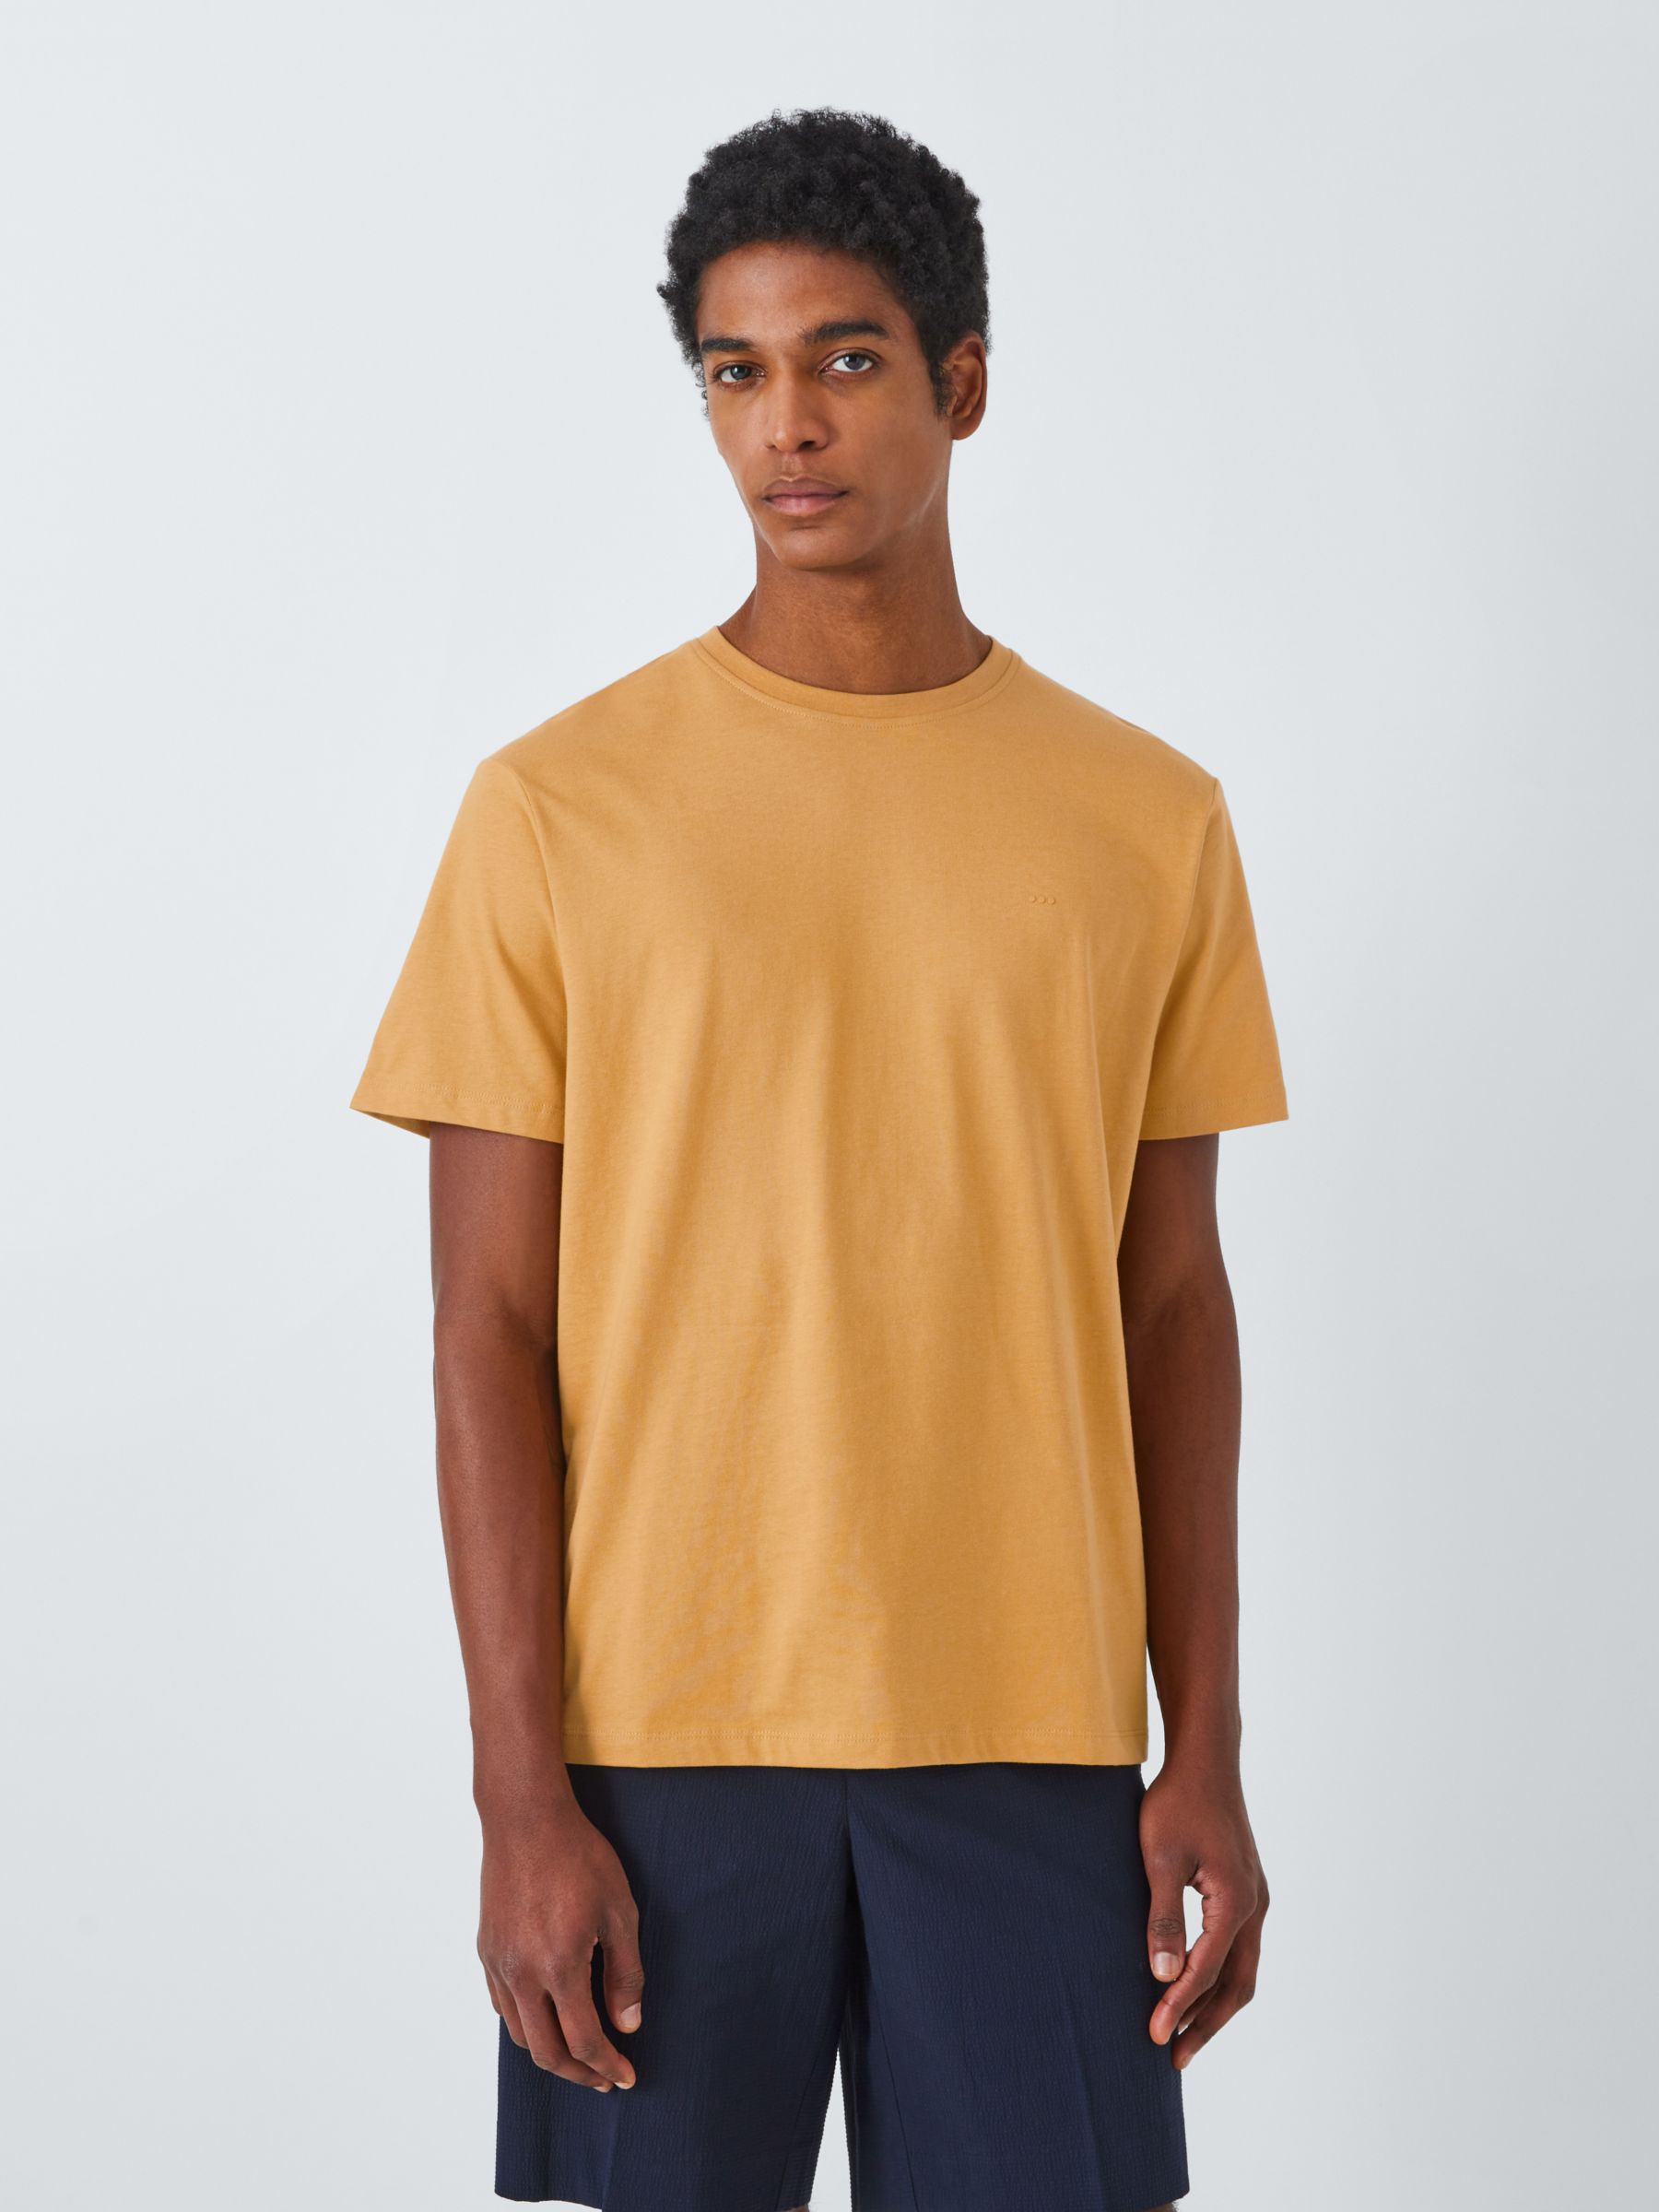 Kin Logo Cotton T-Shirt, Spruce Yellow, S